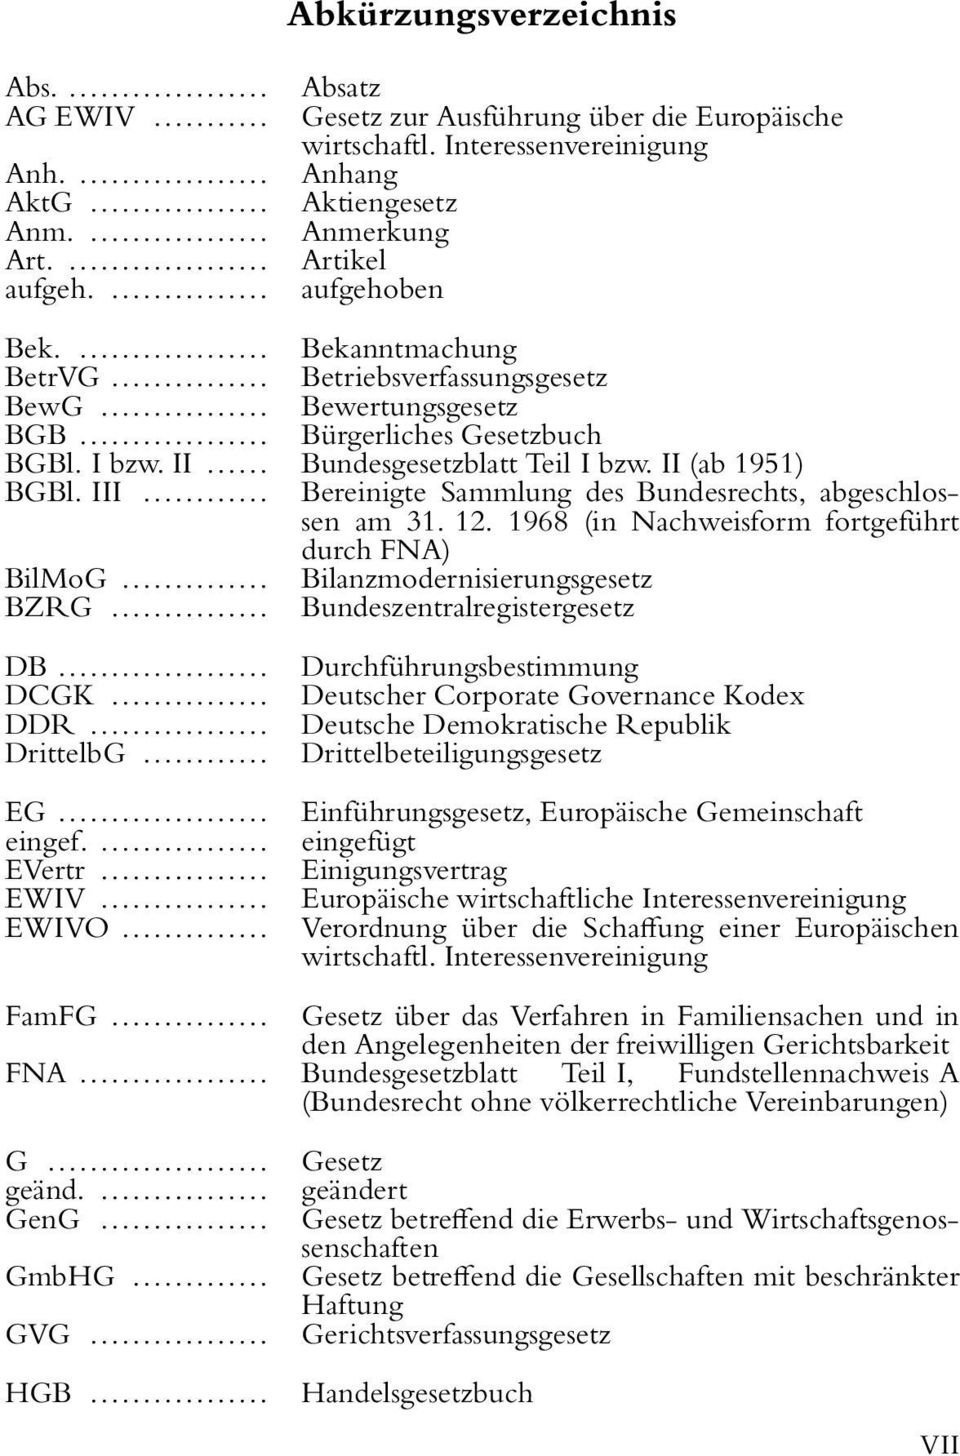 II... Bundesgesetzblatt Teil I bzw. II (ab 1951) BGBl. III... Bereinigte Sammlung des Bundesrechts, abgeschlossen am 31. 12. 1968 (in Nachweisform fortgeführt durch FNA) BilMoG.